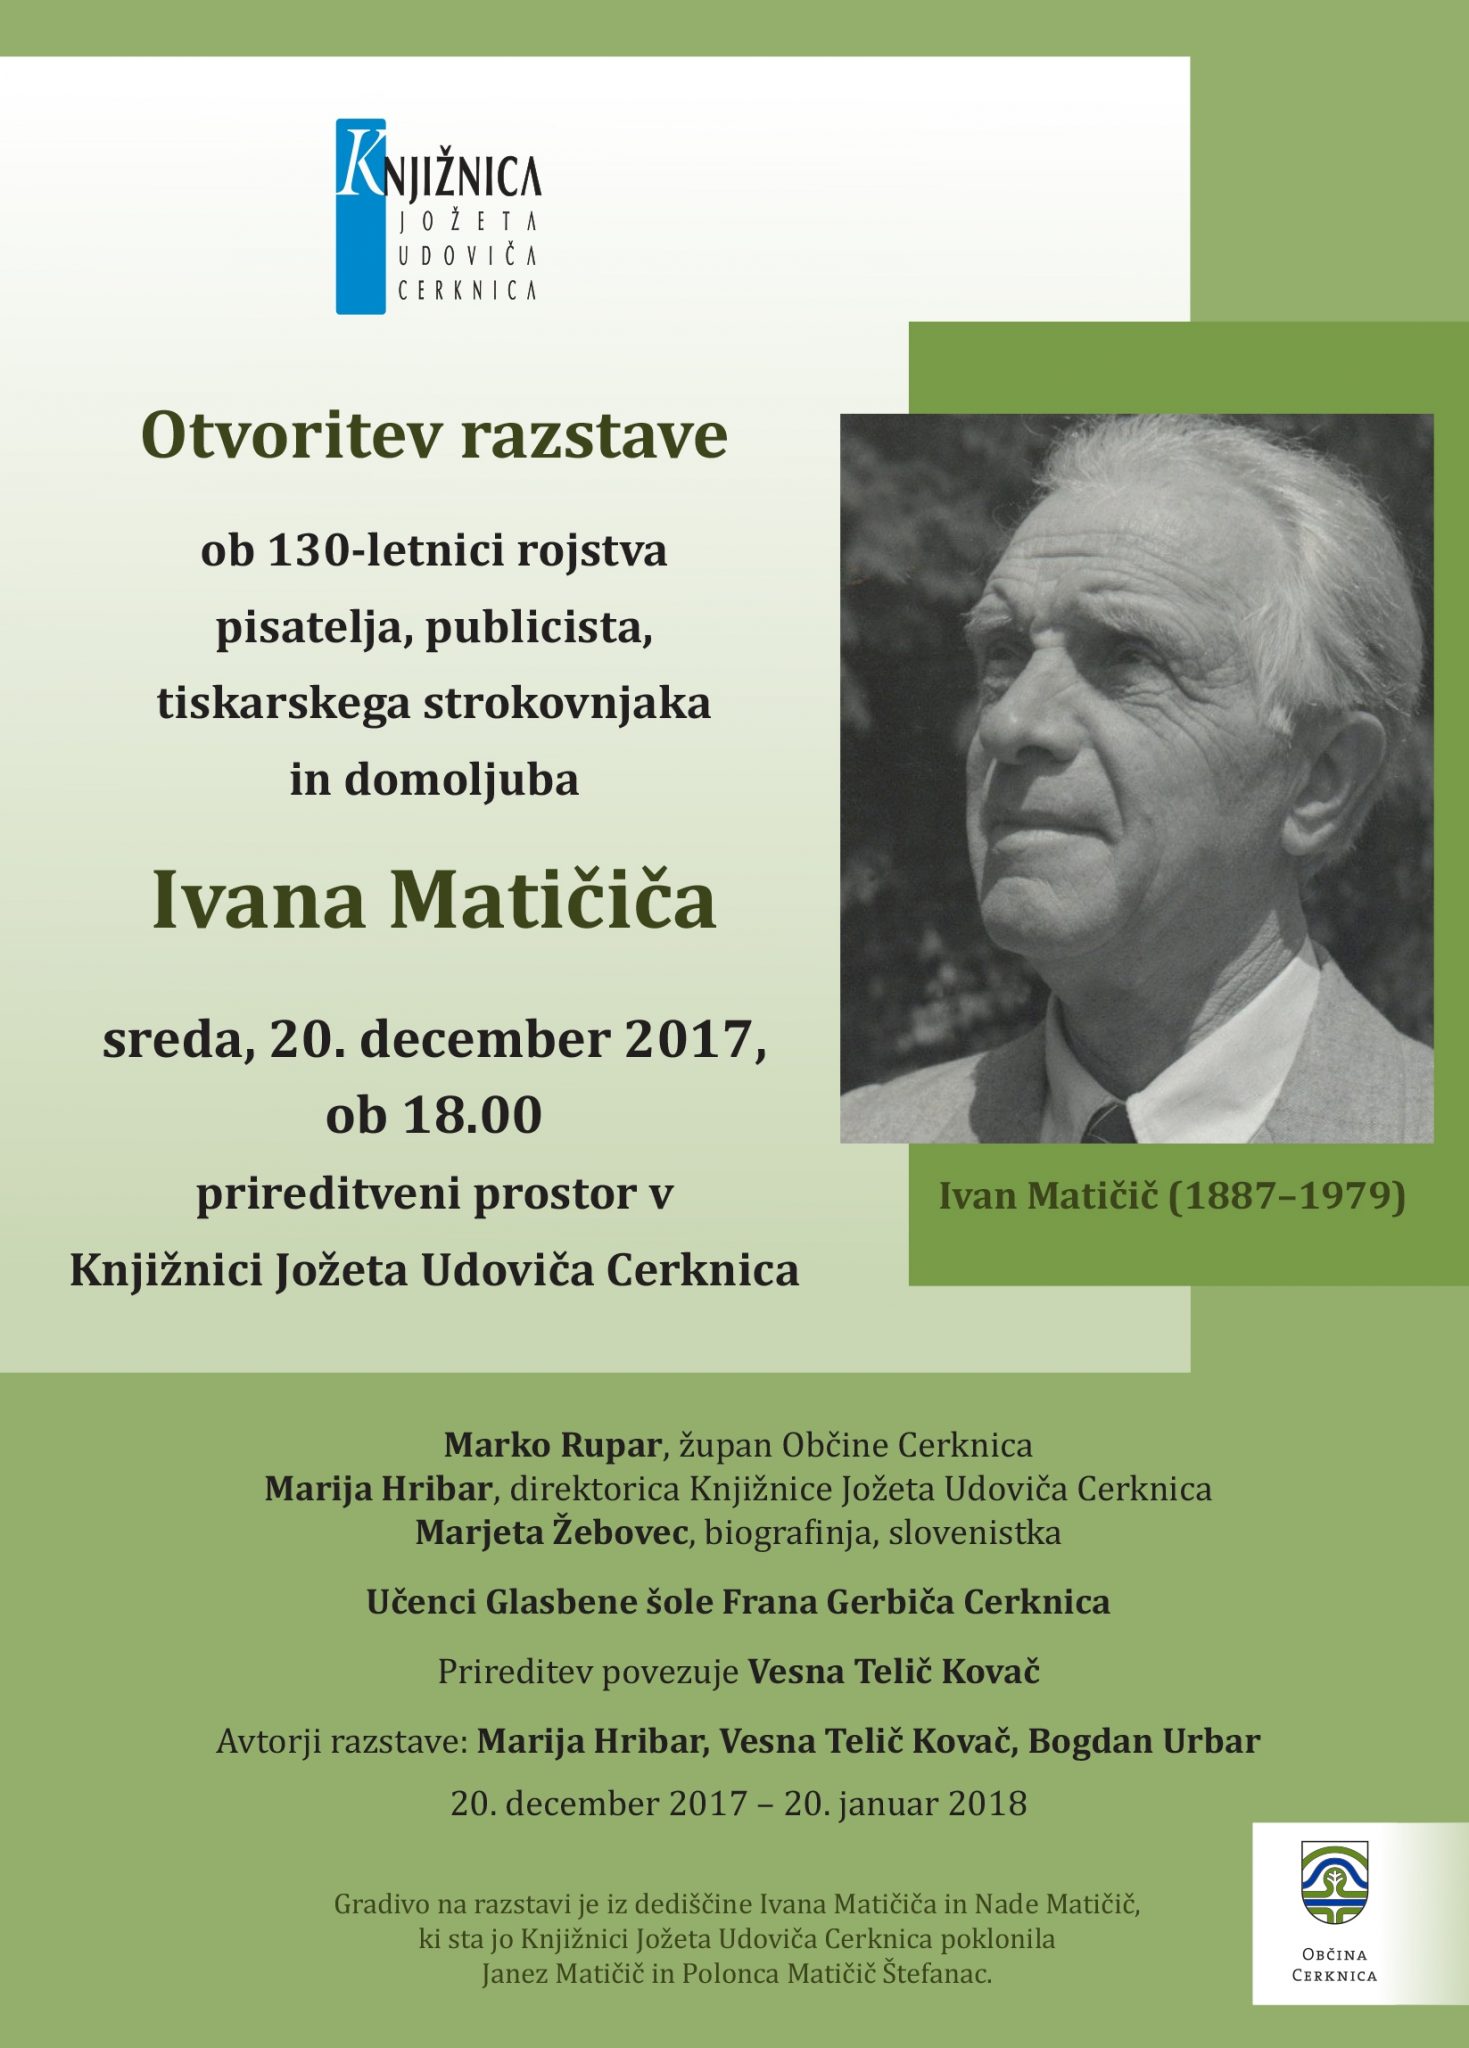 Maticic Ivan vabilo - Ivan Matičič - otvoritev razstave ob 130-letnici rojstva